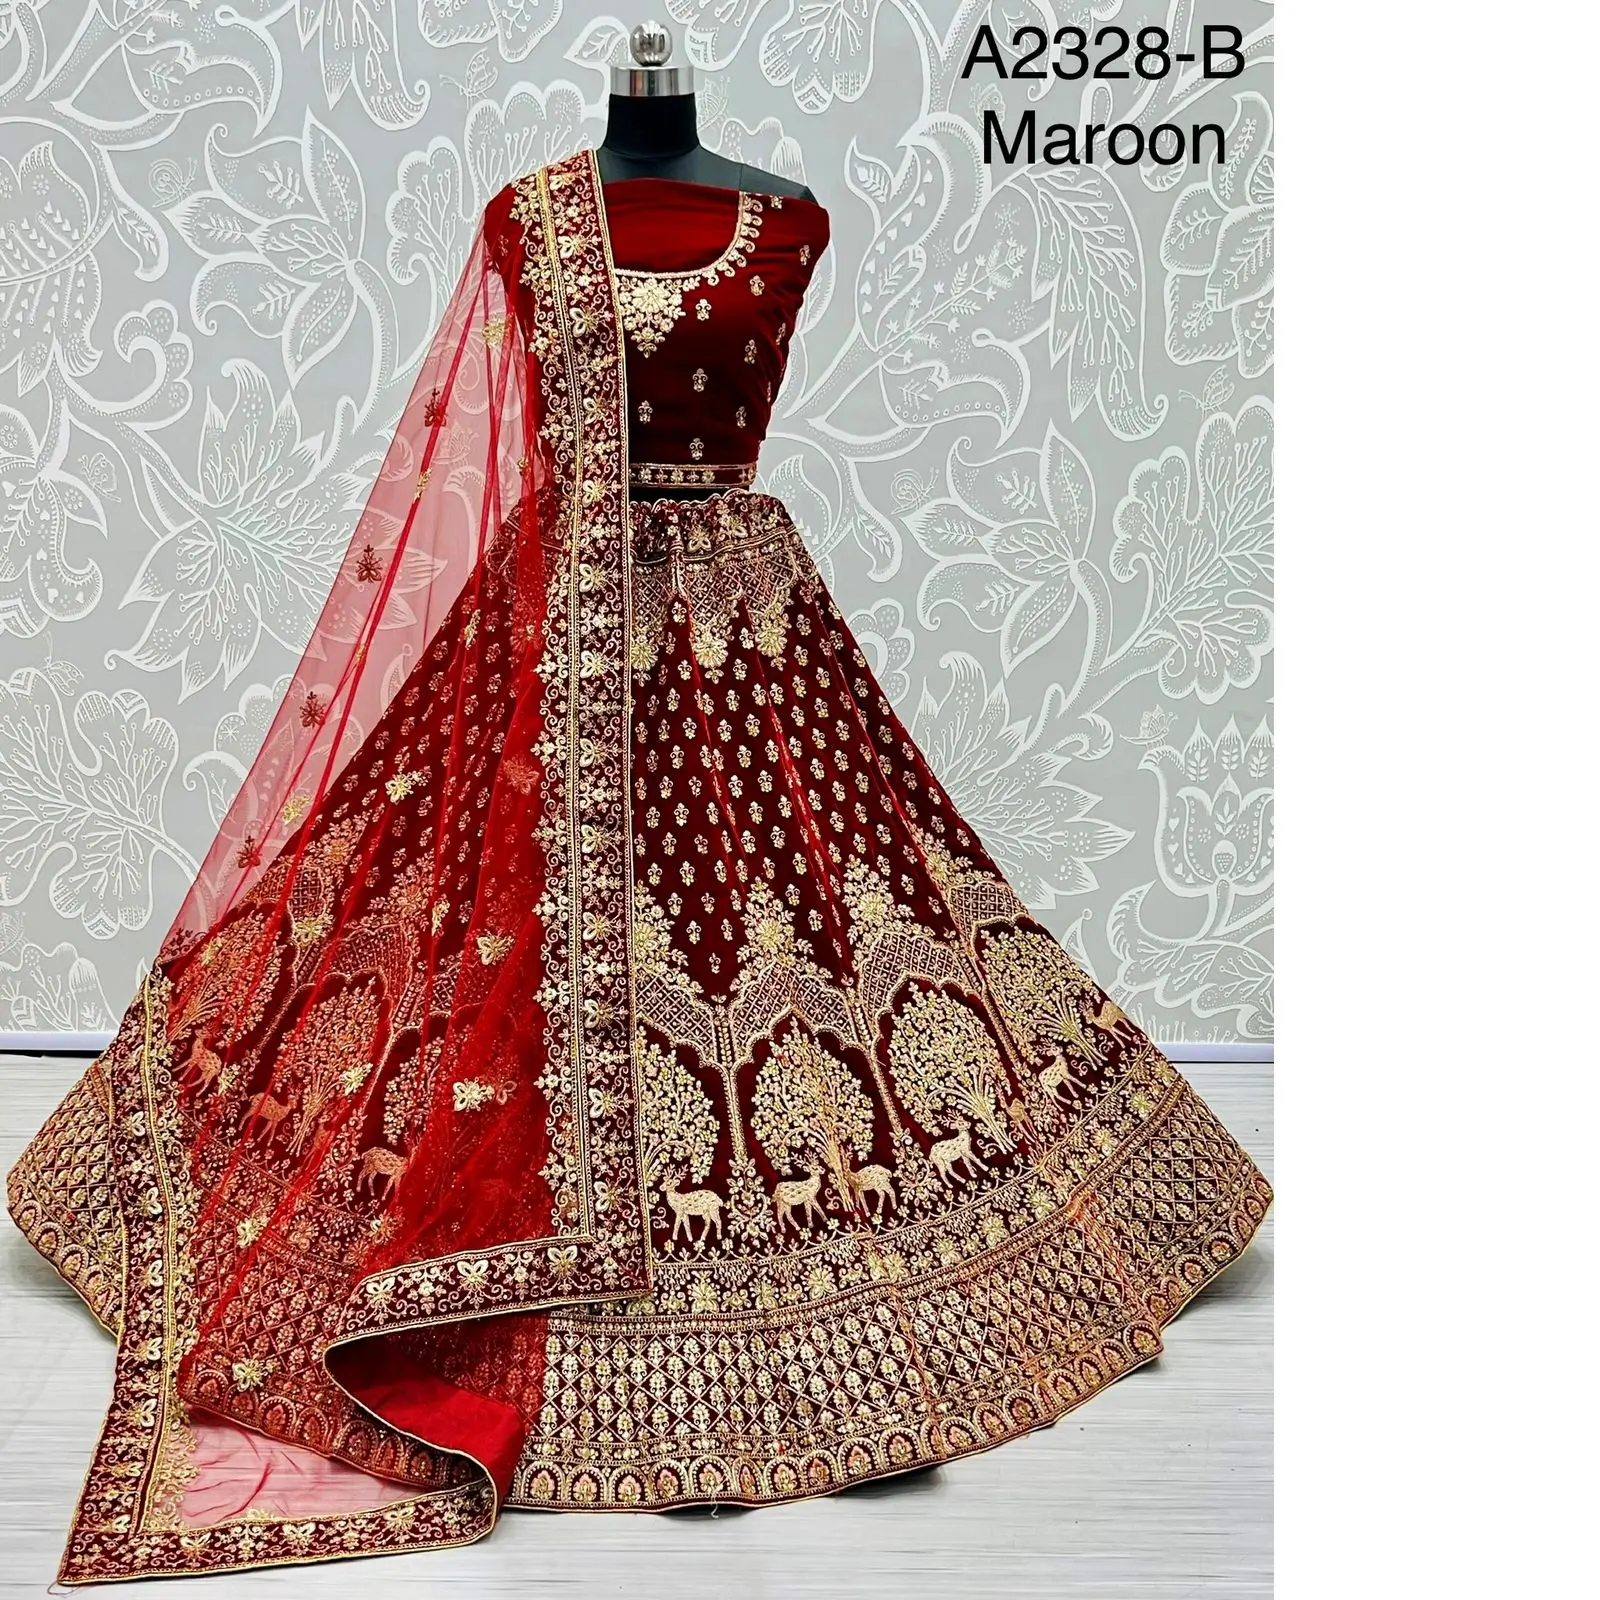 Lehenga เสื้อผ้าพื้นเมืองของผู้หญิง,เสื้อผ้าใส่ไปงานแต่ง Lehenga Choli แบบอินเดียพรีเมี่ยมสีแดง